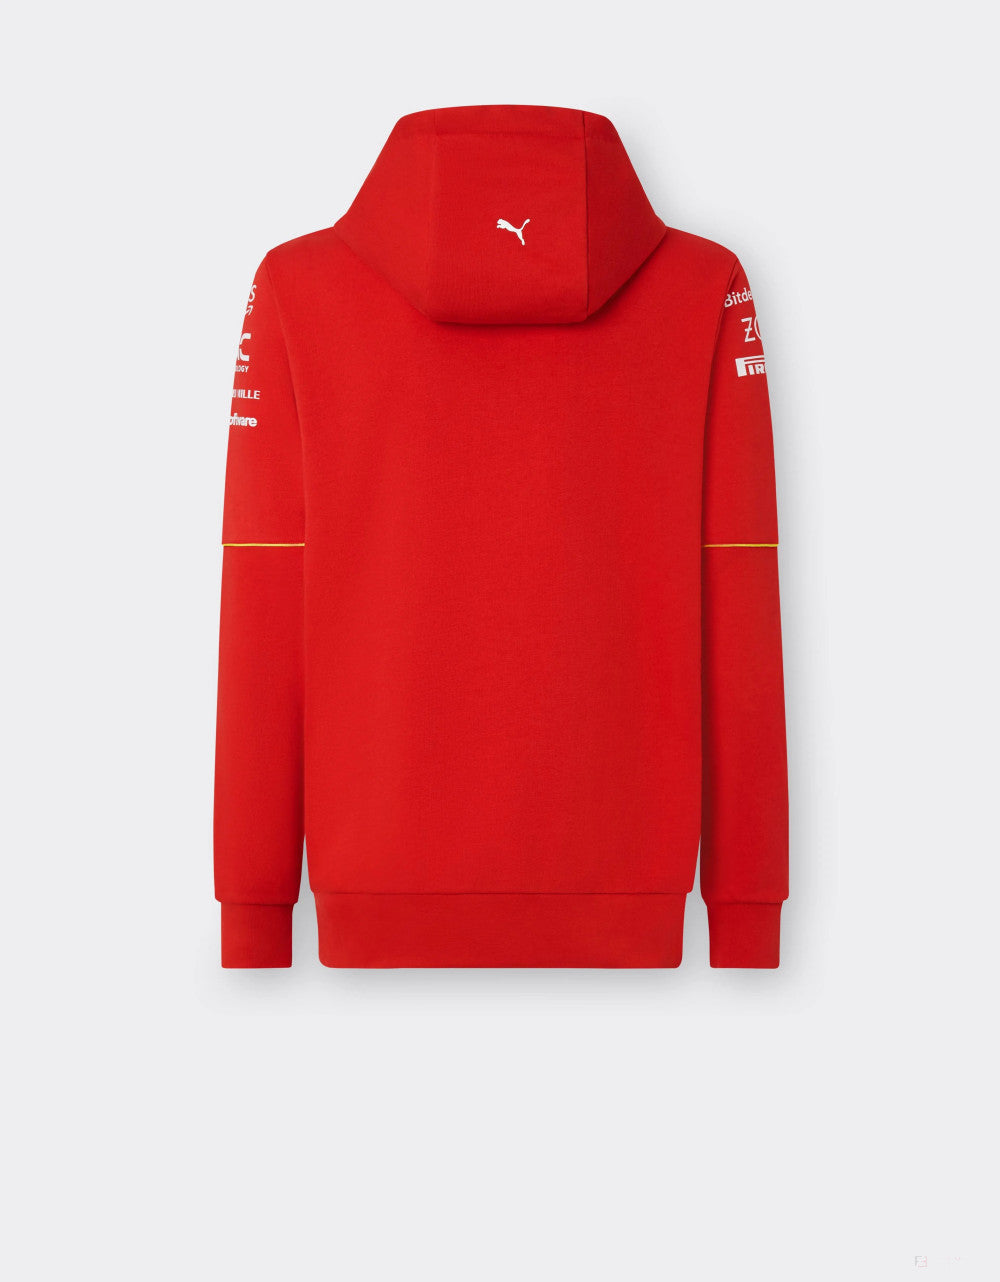 Ferrari hoodie, Puma, team, red, 2024